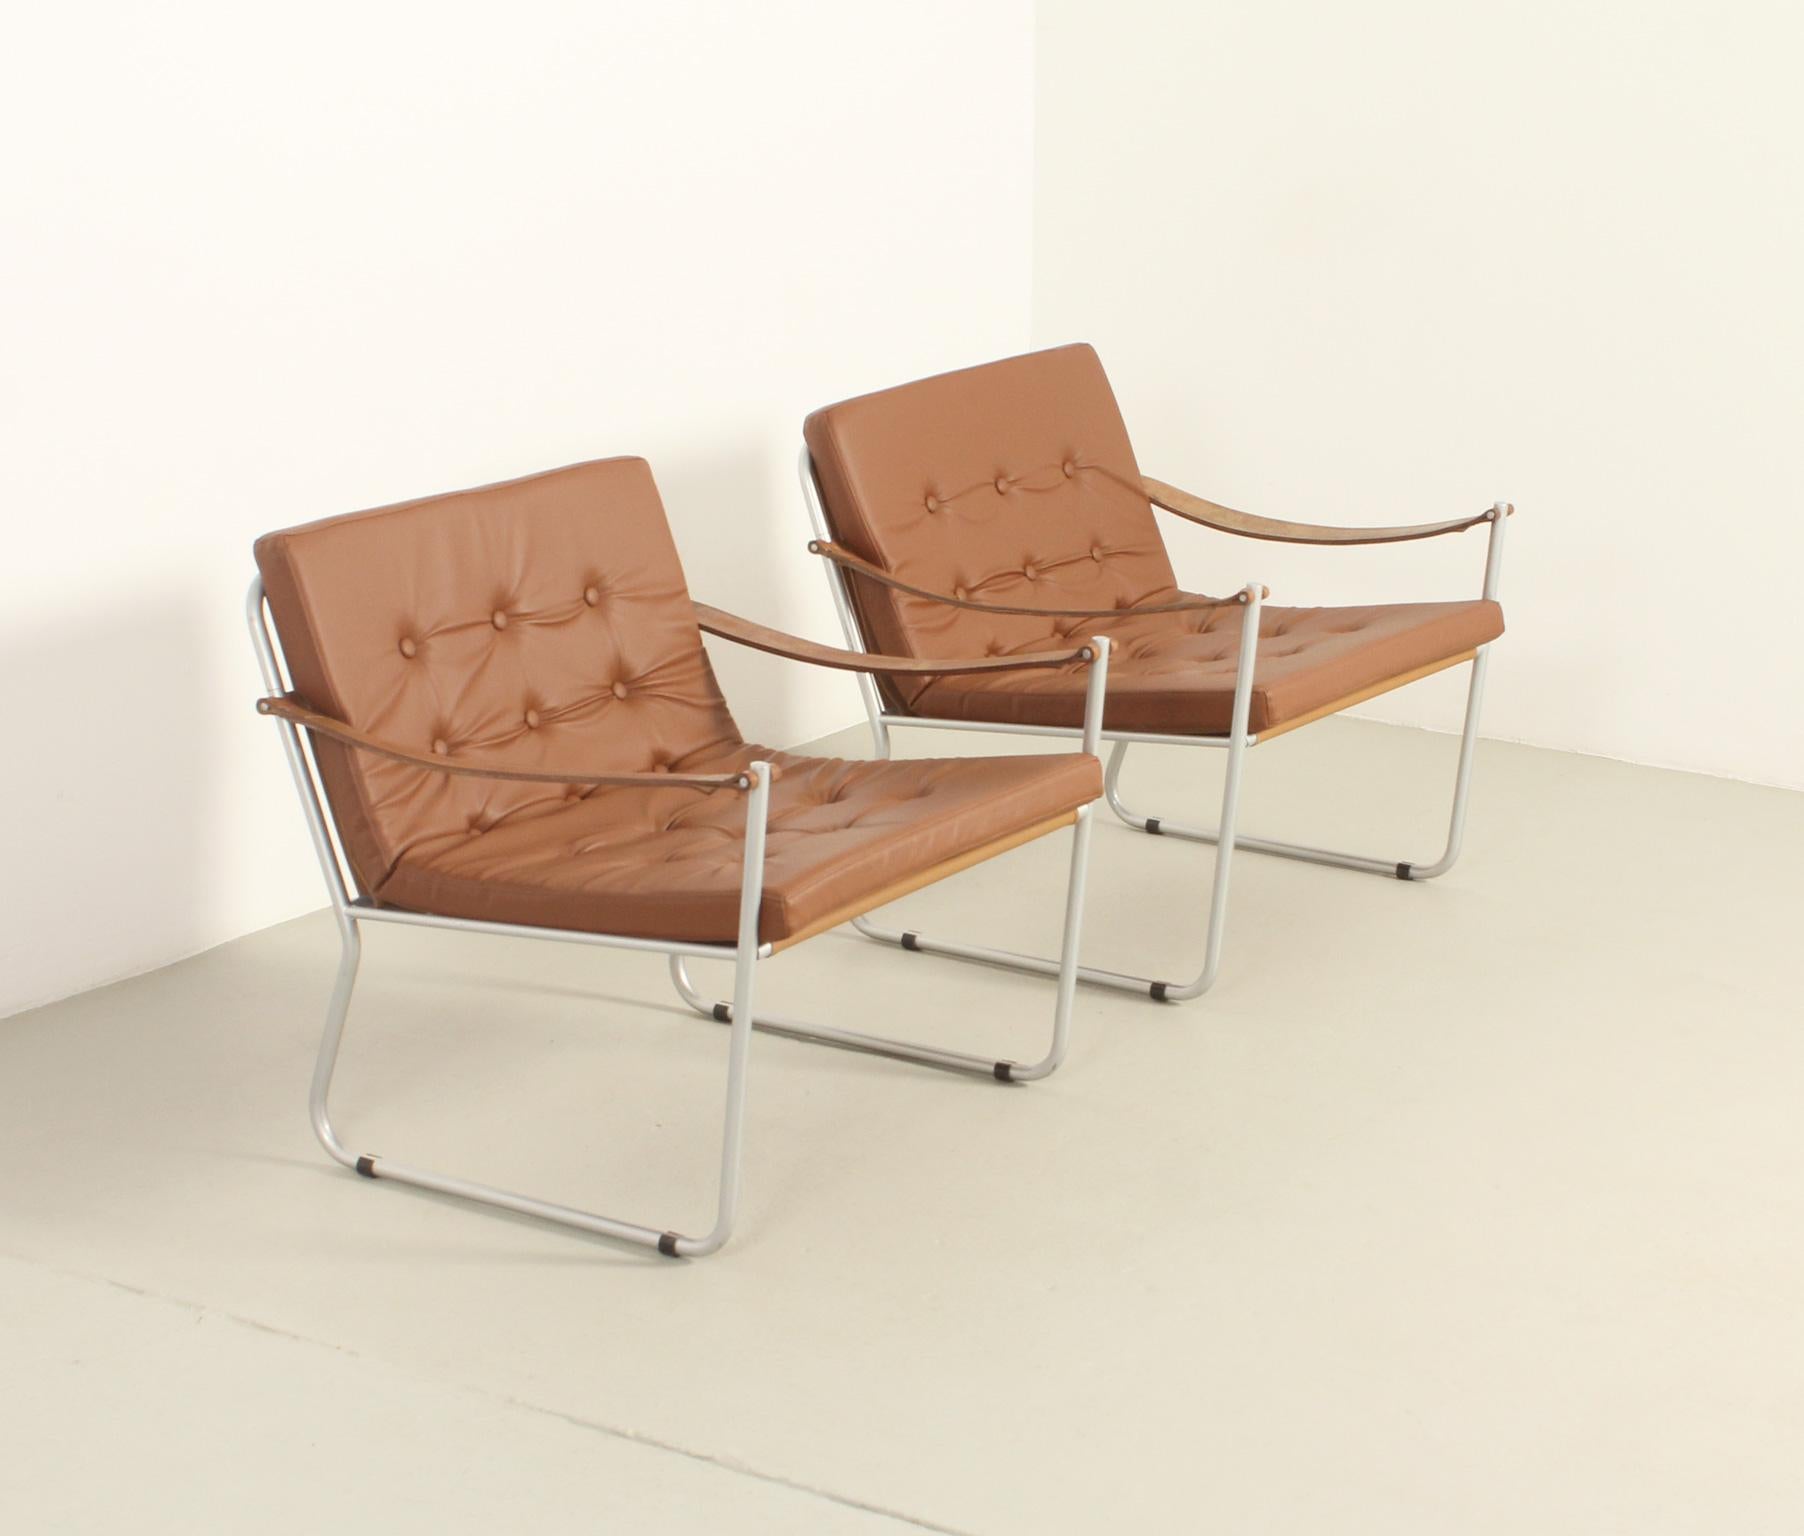 Paire de fauteuils de style safari avec accoudoirs en cuir, années 1960. Structure en métal avec harnais et coussin en vinyle et accoudoirs en cuir d'origine.